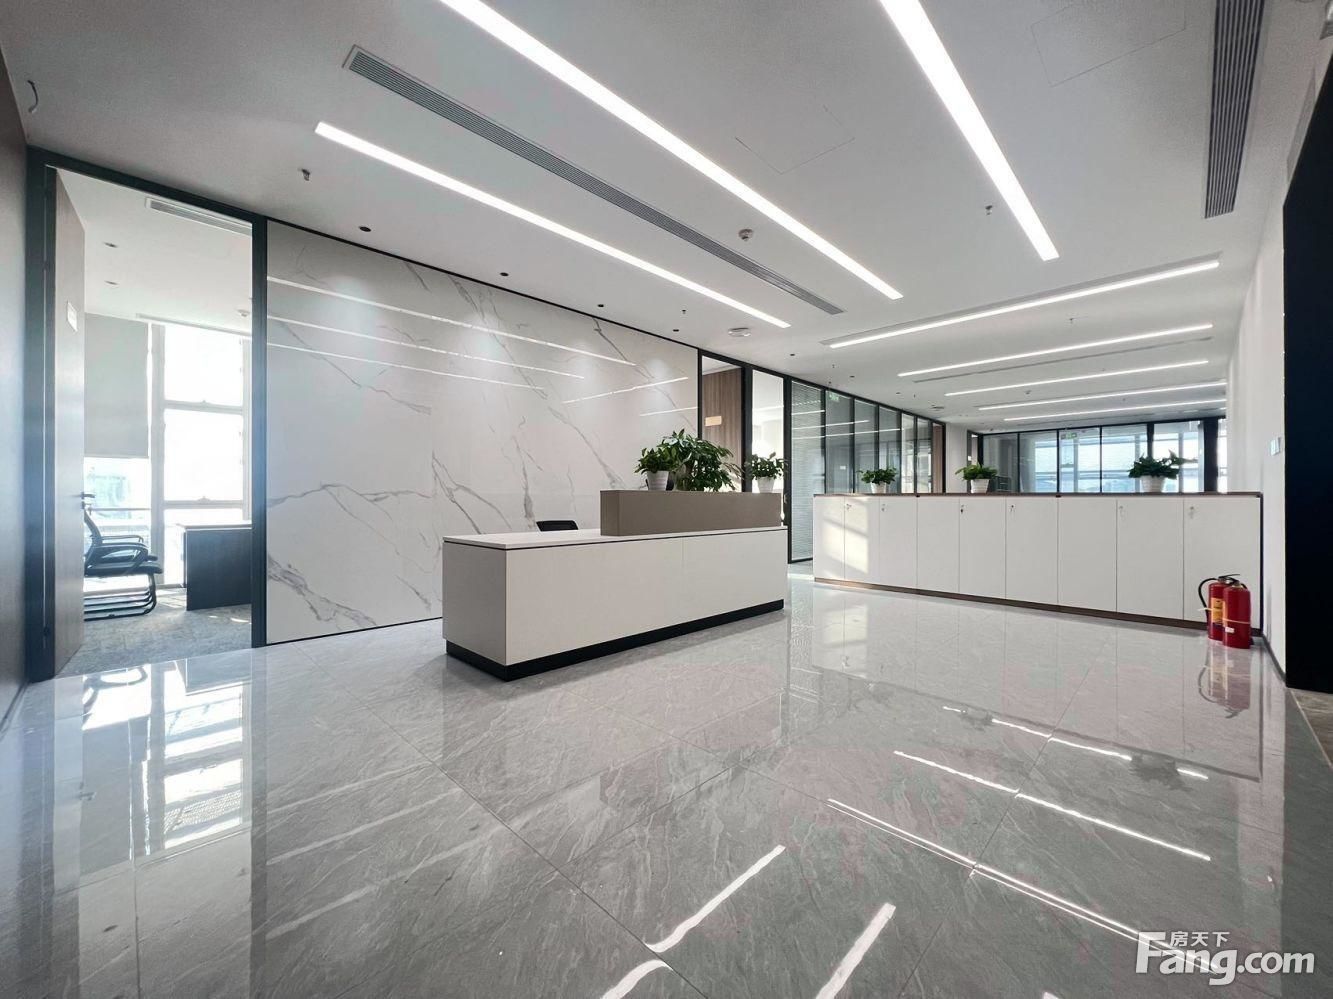 办公室出租,时代科技大厦,业主面积260平,精装修